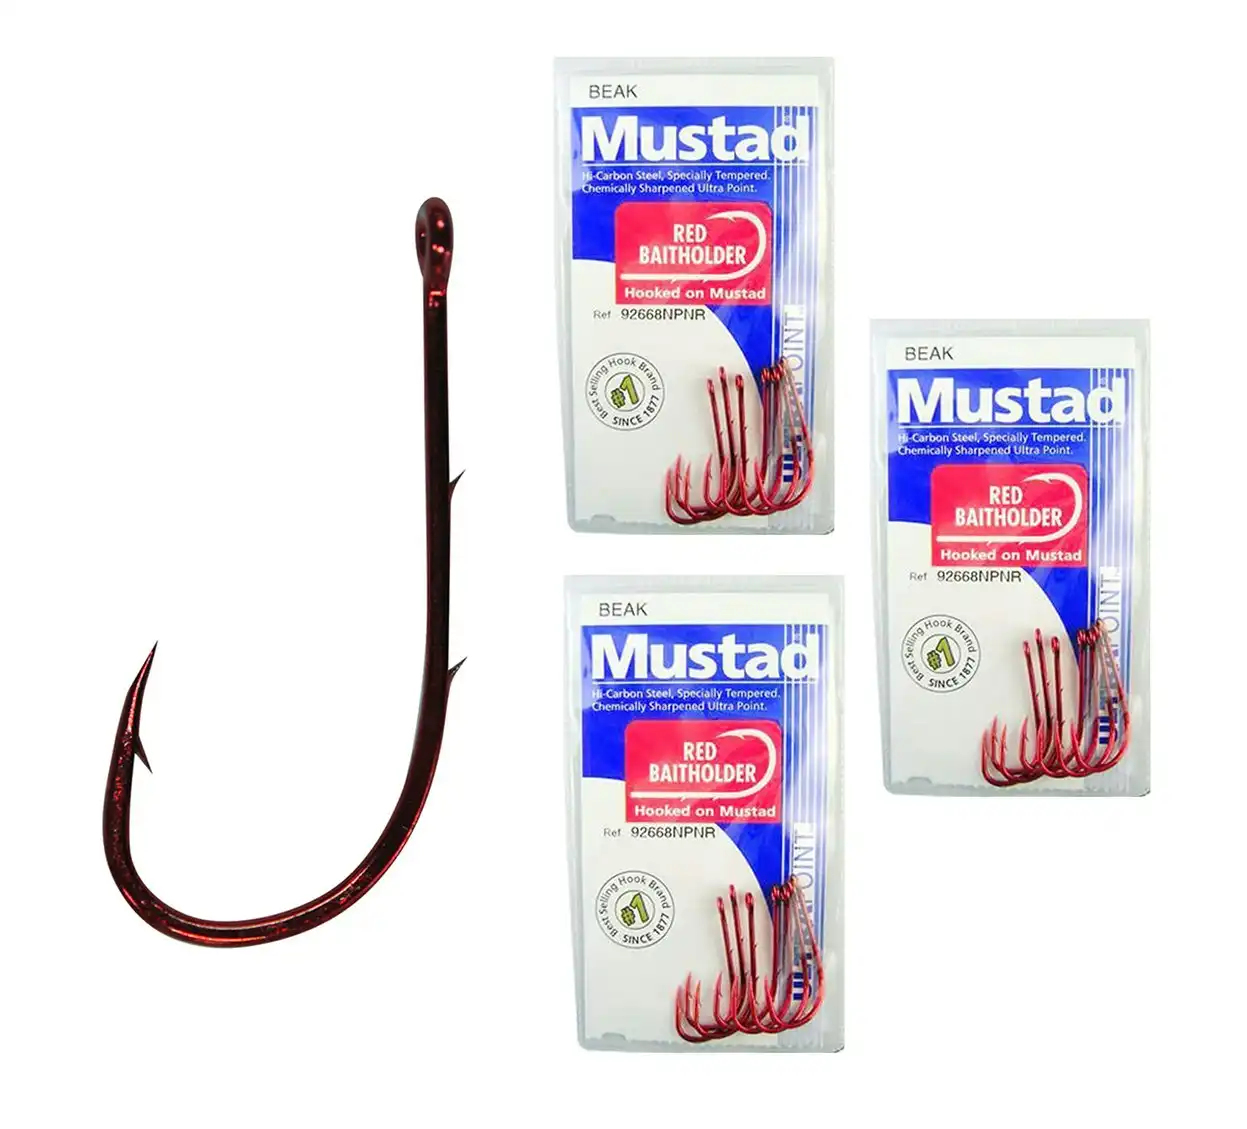 3 Packs of Mustad 92668NPNR Red Baitholder Chemically Sharp Fishing Hooks